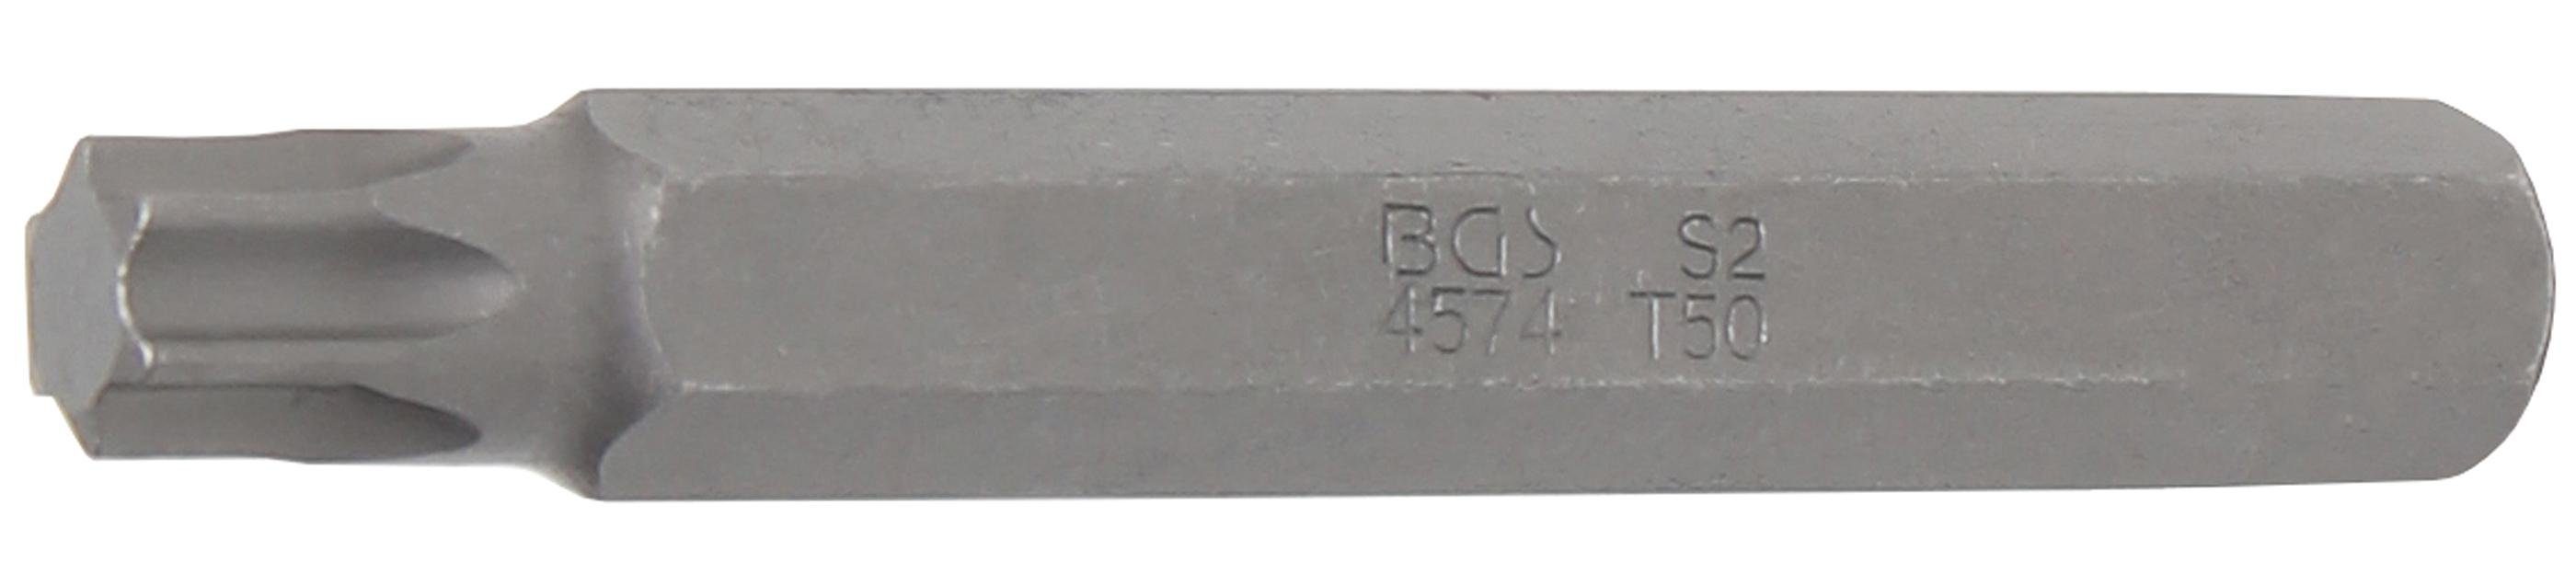 Antrieb mm, Länge BGS 75 (3/8), 10 T-Profil T50 mm (für Außensechskant Bit-Schraubendreher Torx) Bit, technic